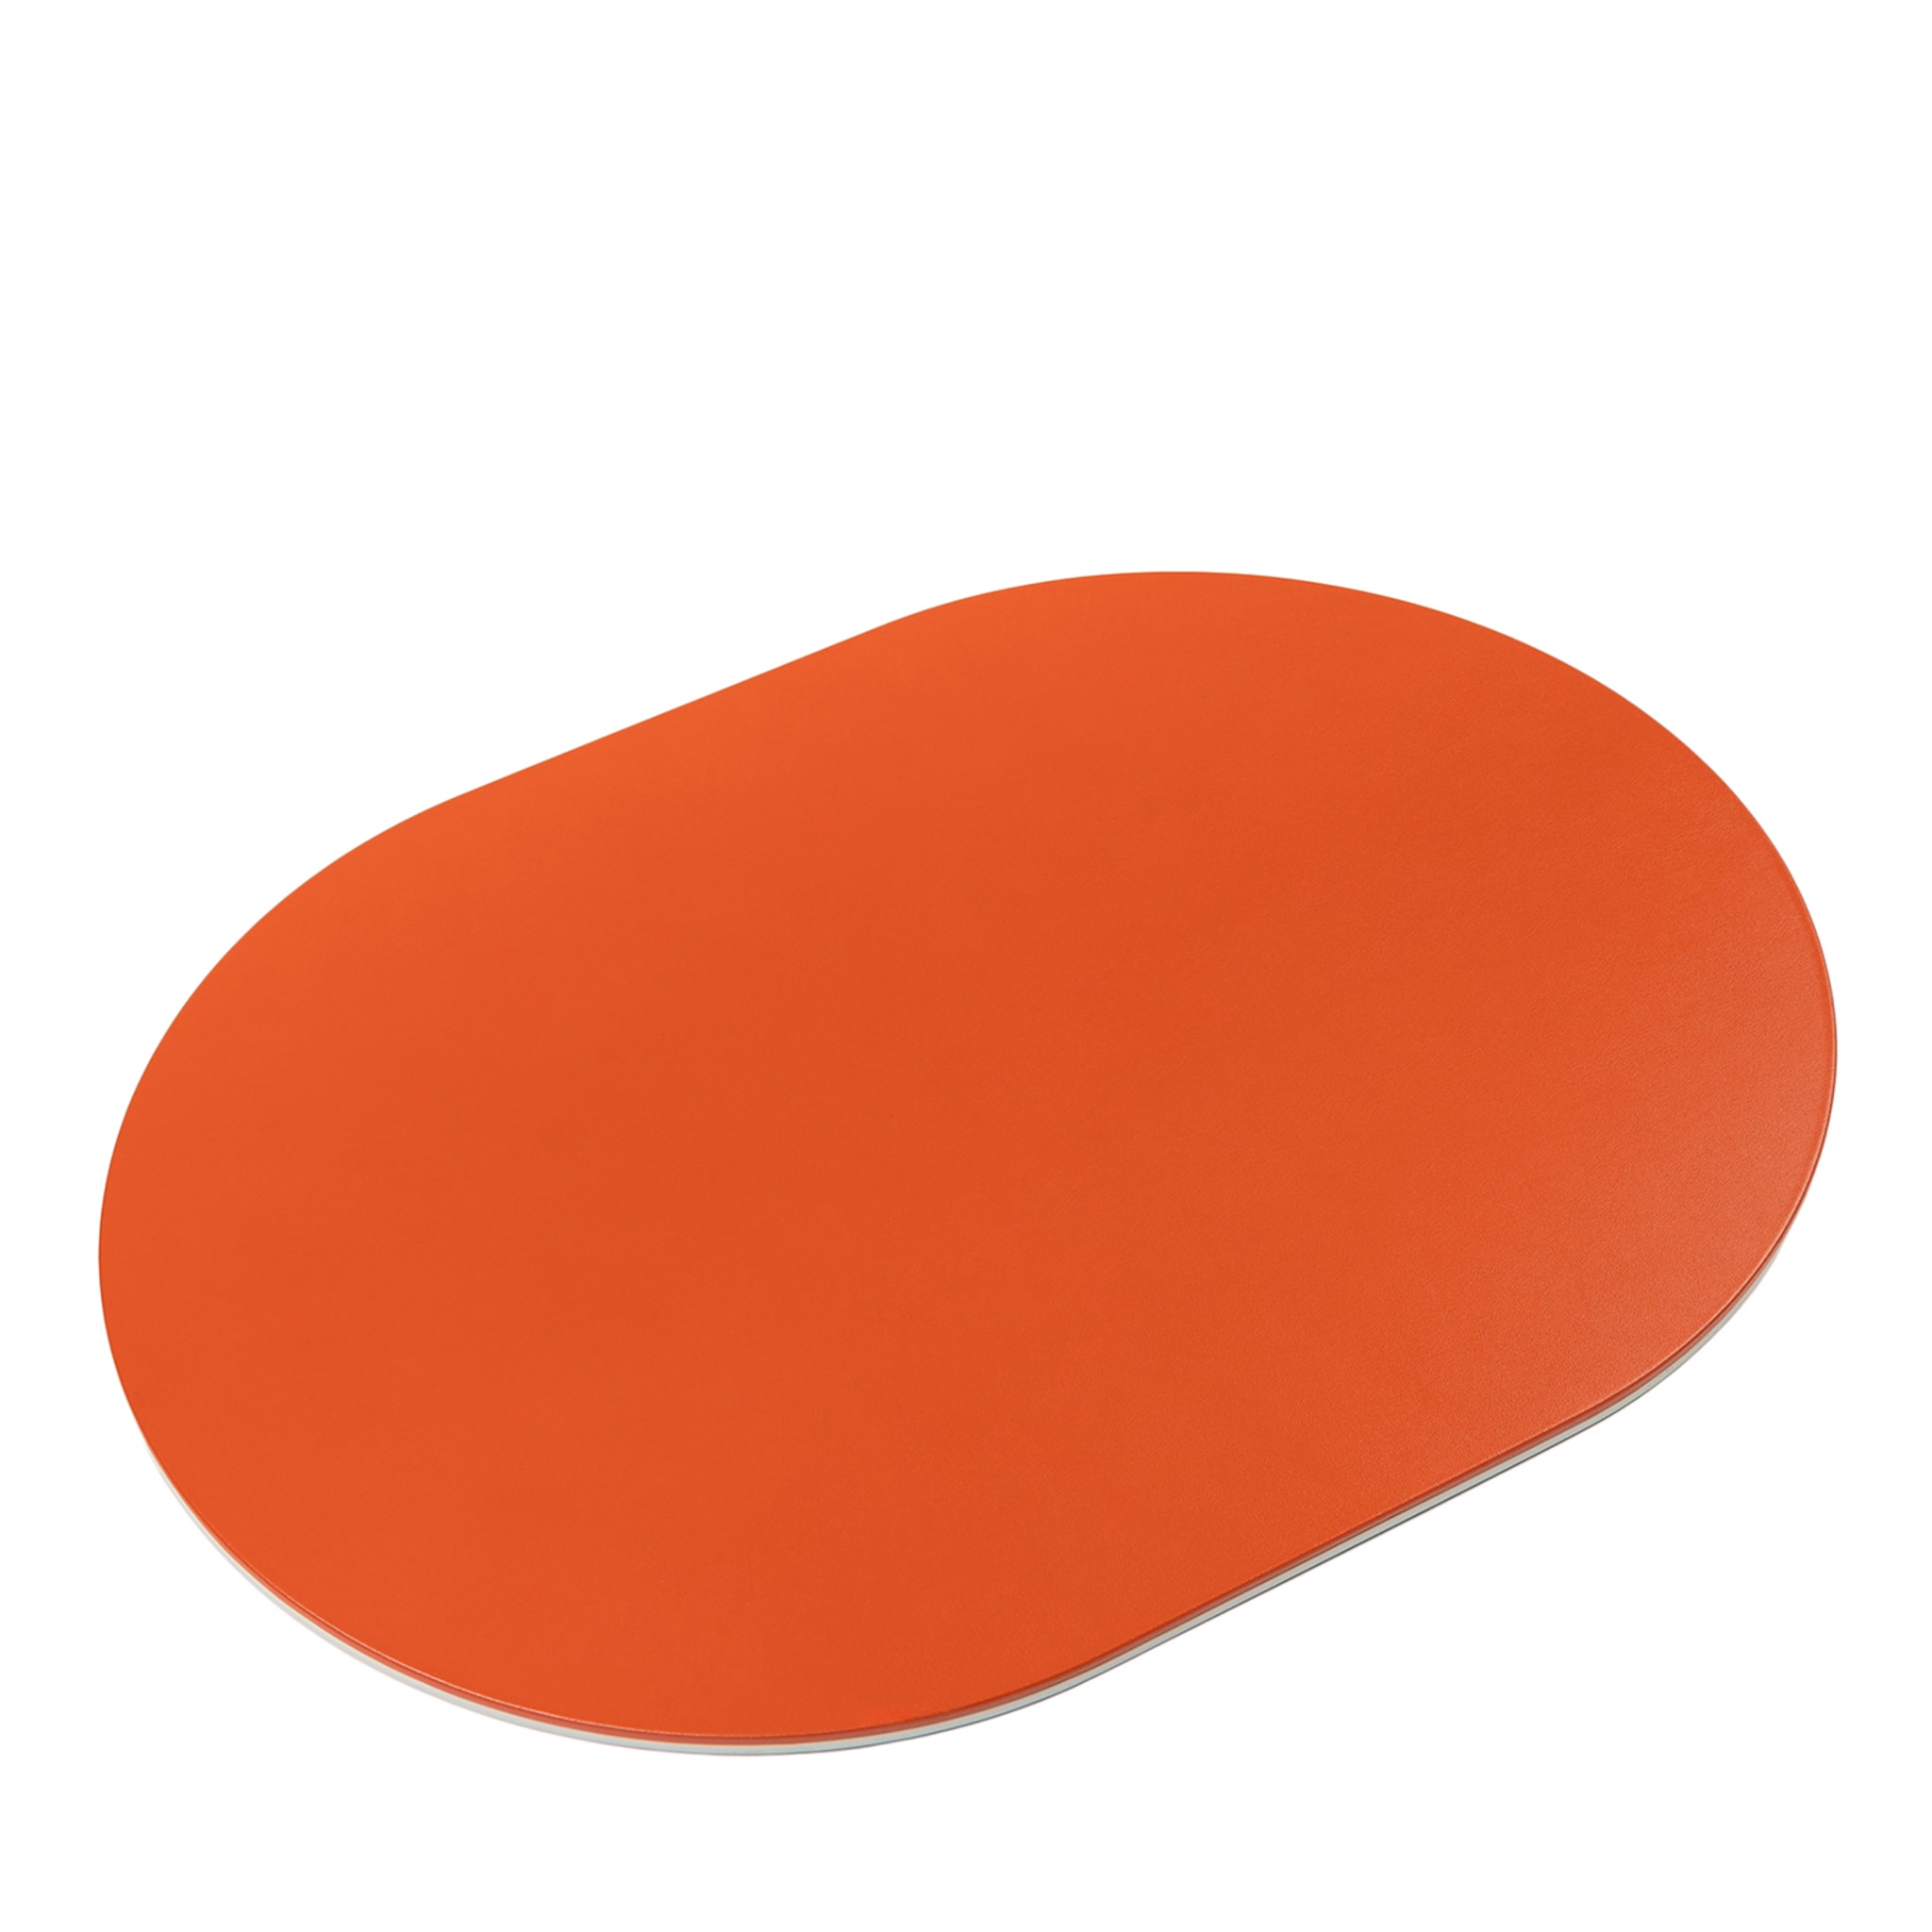 Mondrian Spritz Orange und Cappuccino Beige Soft Capsule Tischset  - Hauptansicht